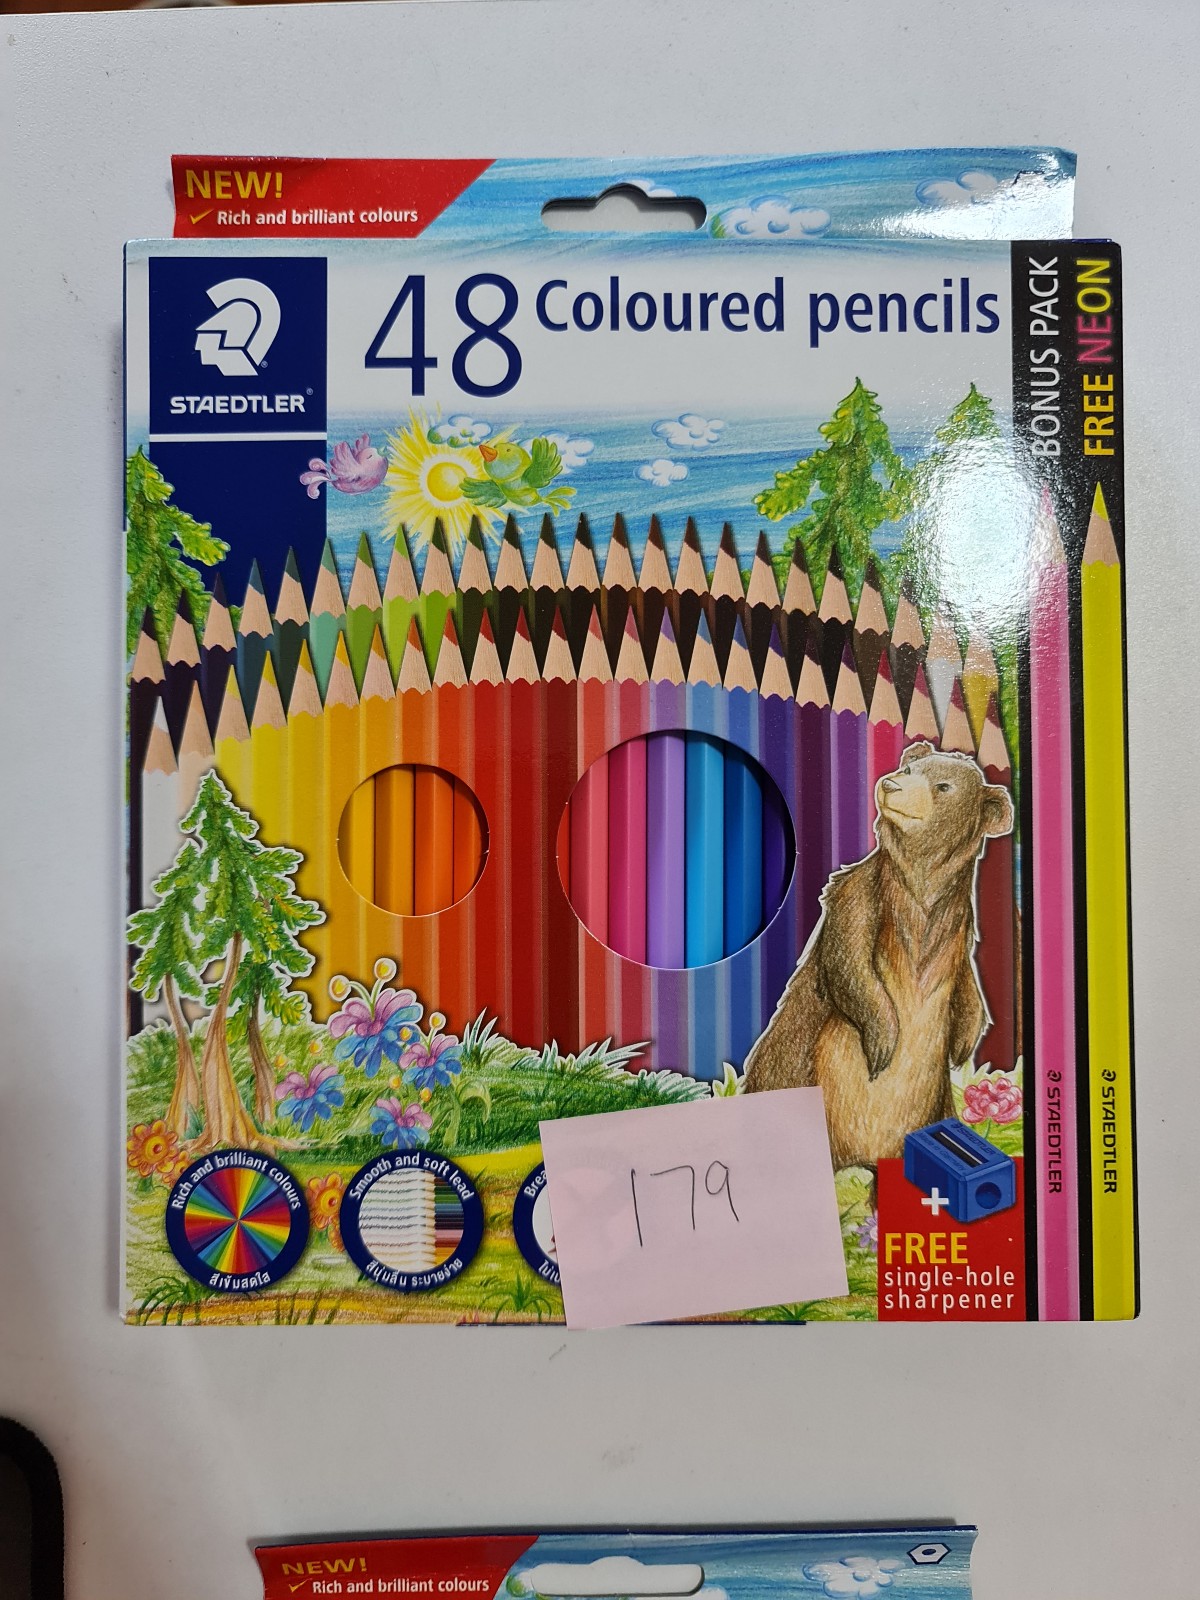 สีไม้ STAEDTLER สีไม้ 36/48 สี ฟรี ดินสอ 2B และ กบเหลาดินสอ จำนวน 1 กล่อง